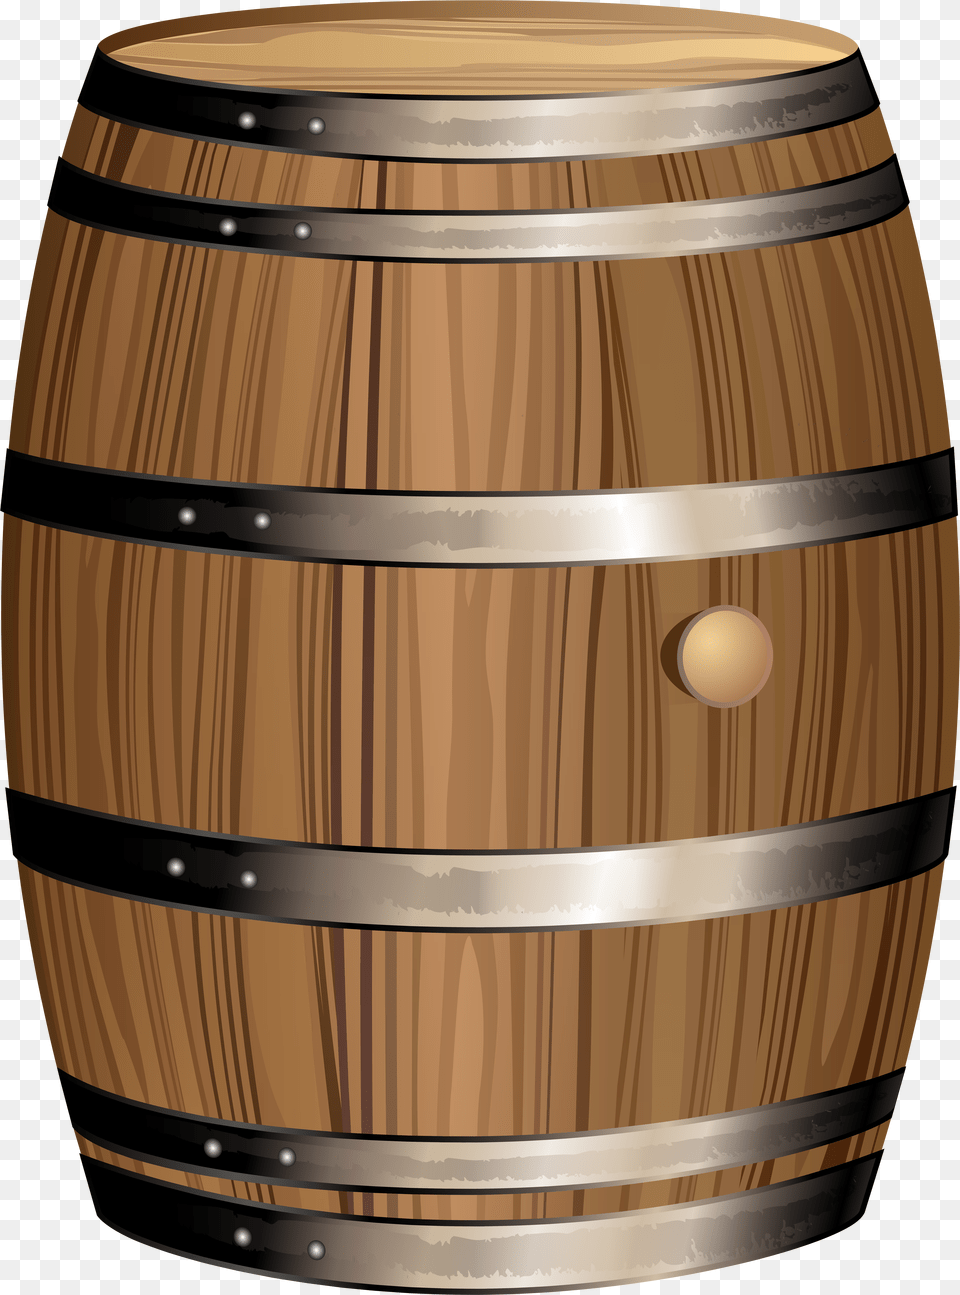 Clip Art Wooden Barrel Clipart Barrel Clipart, Ball, Clothing, Football, Shirt Free Transparent Png